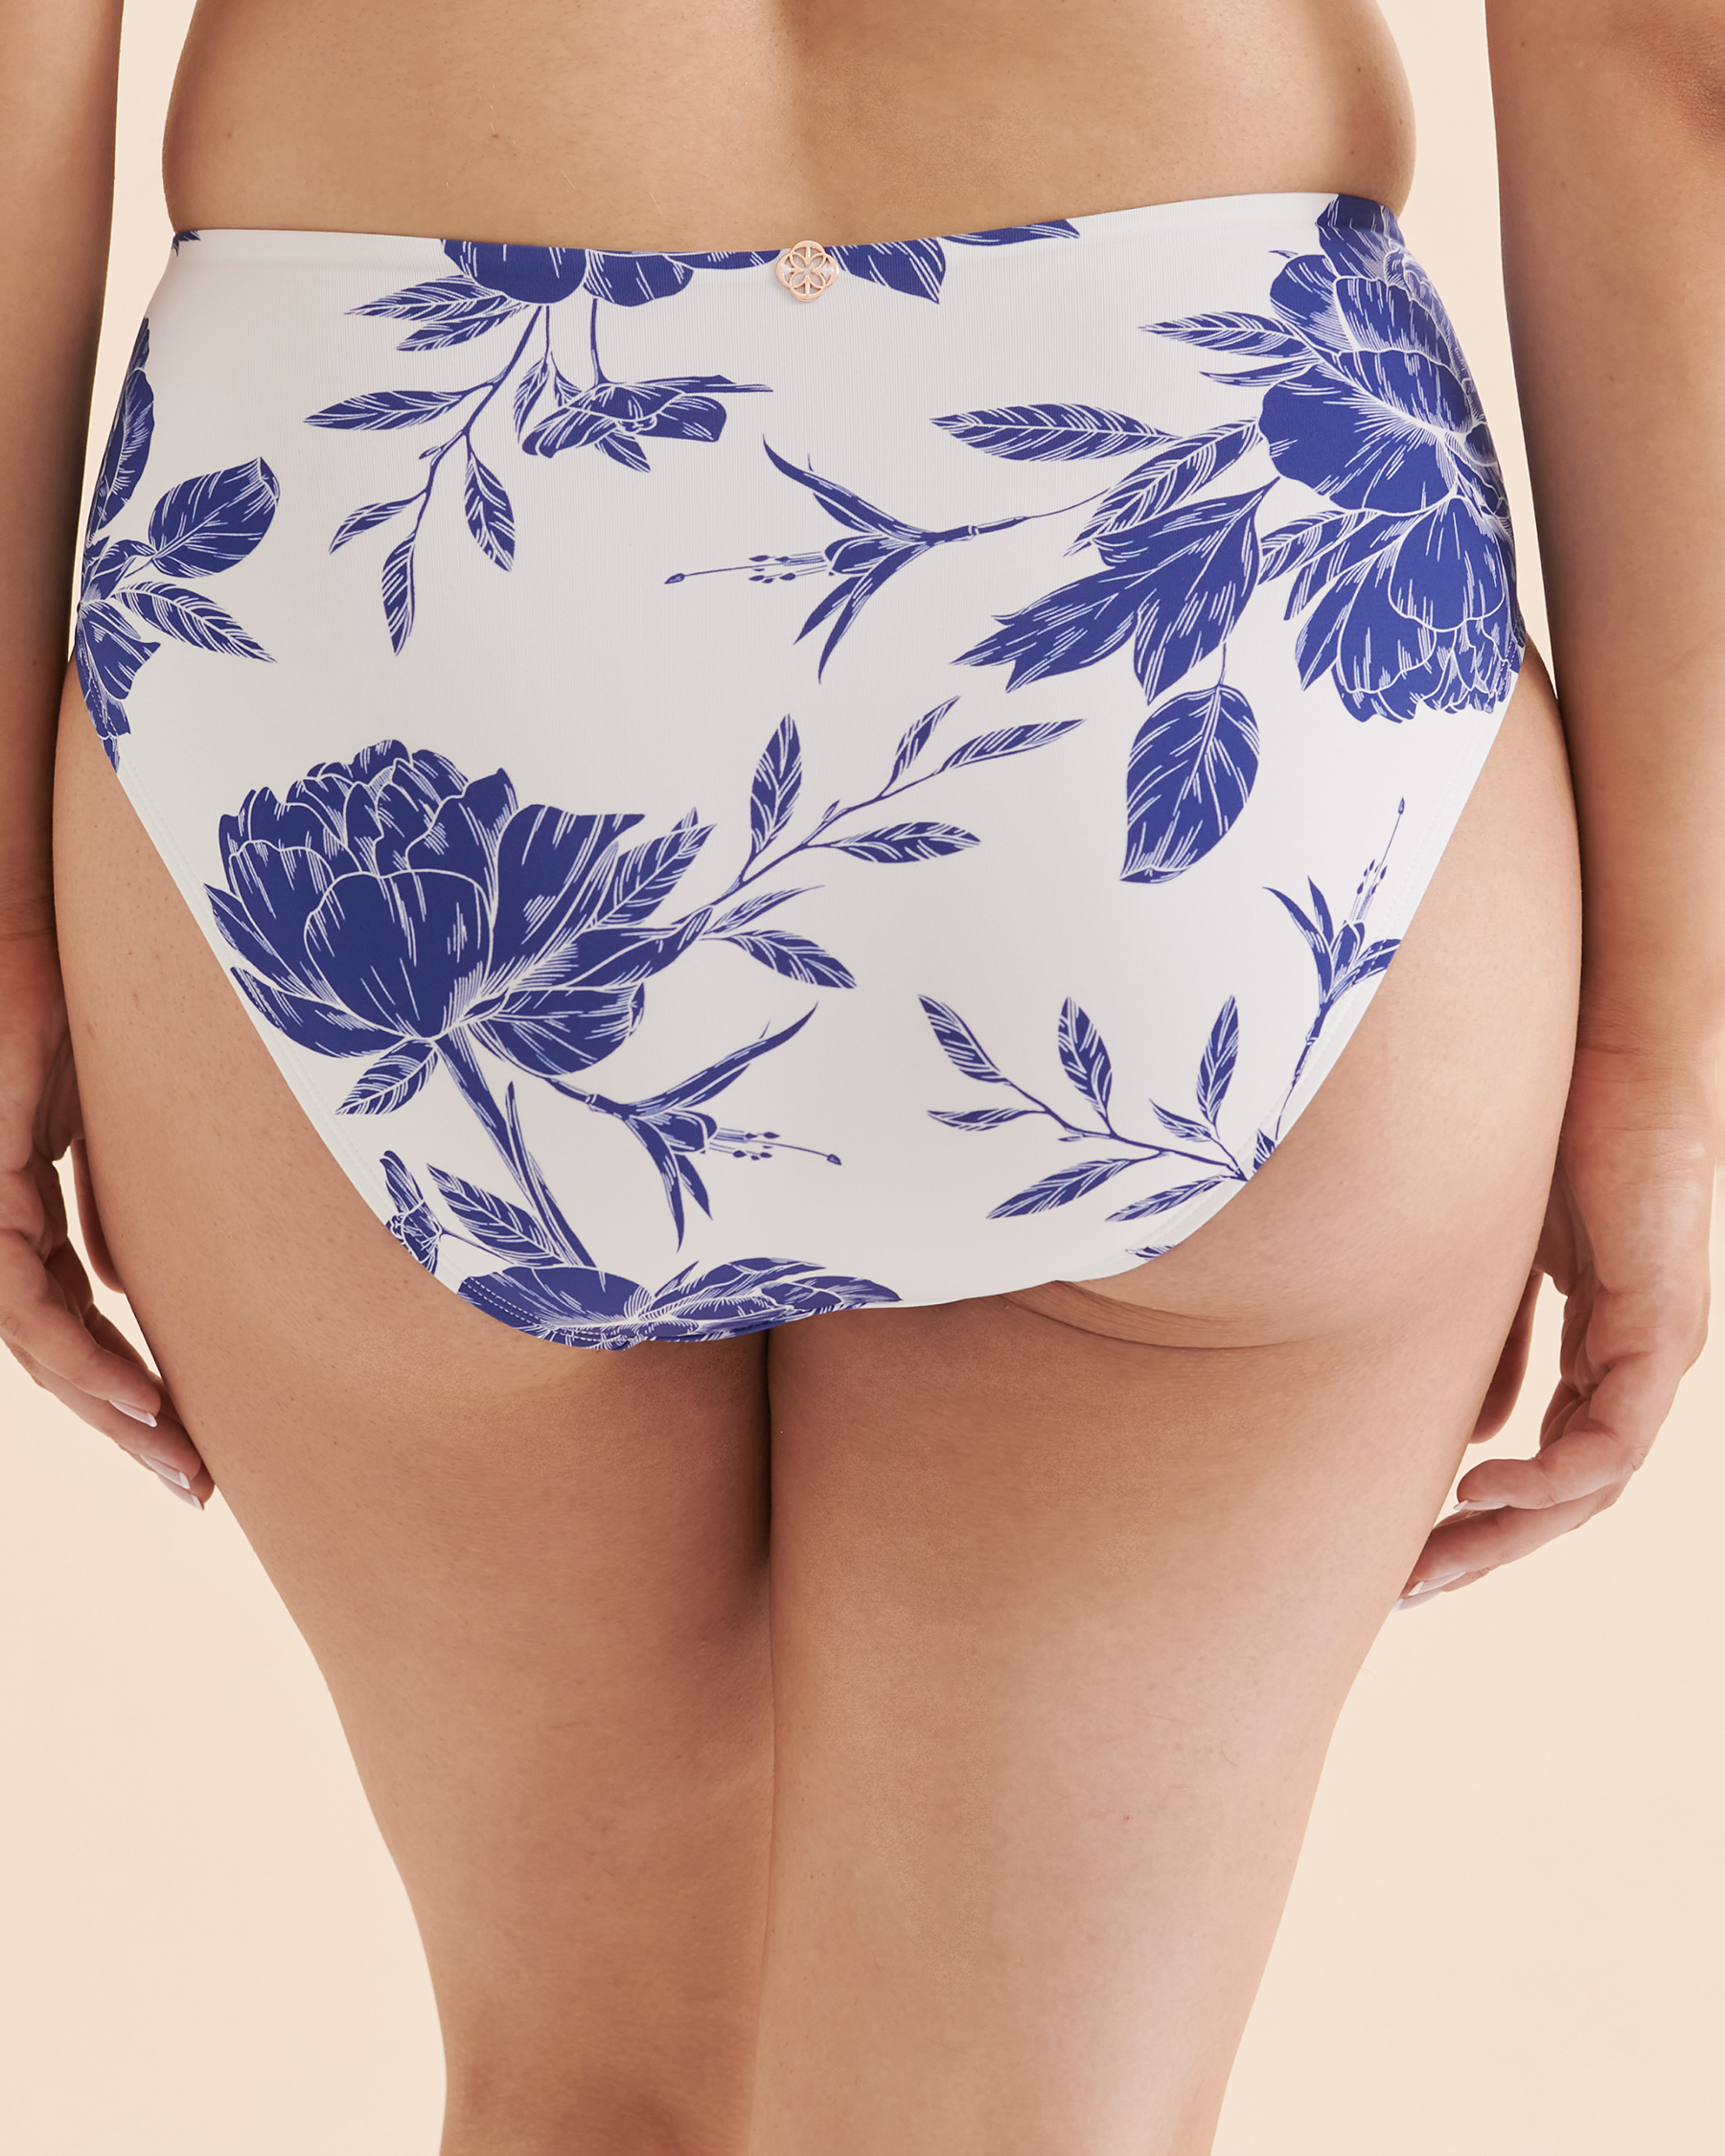 TURQUOISE COUTURE Bas de bikini taille haute Floral Fleurs bleues et blanches 01300272 - Voir2